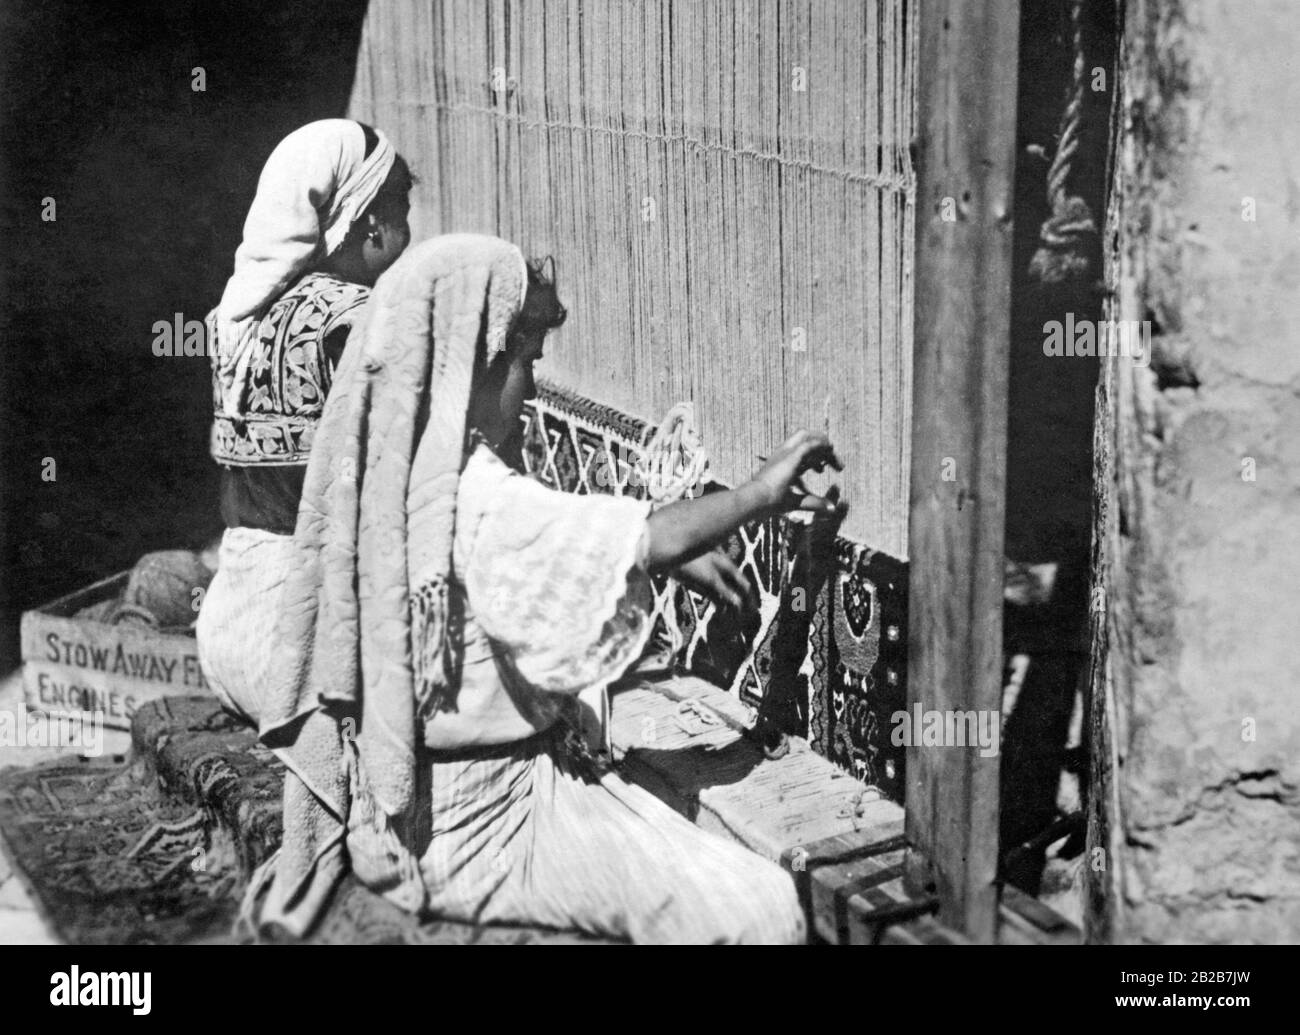 Tunesische Frauen Weben Teppiche Der Rahmen Ist Mit Glocken Versehen So Dass Man Horen Kann Wenn Die Frauen Ihre Arbeit Unterbrechen Undatiertes Foto Stockfotografie Alamy